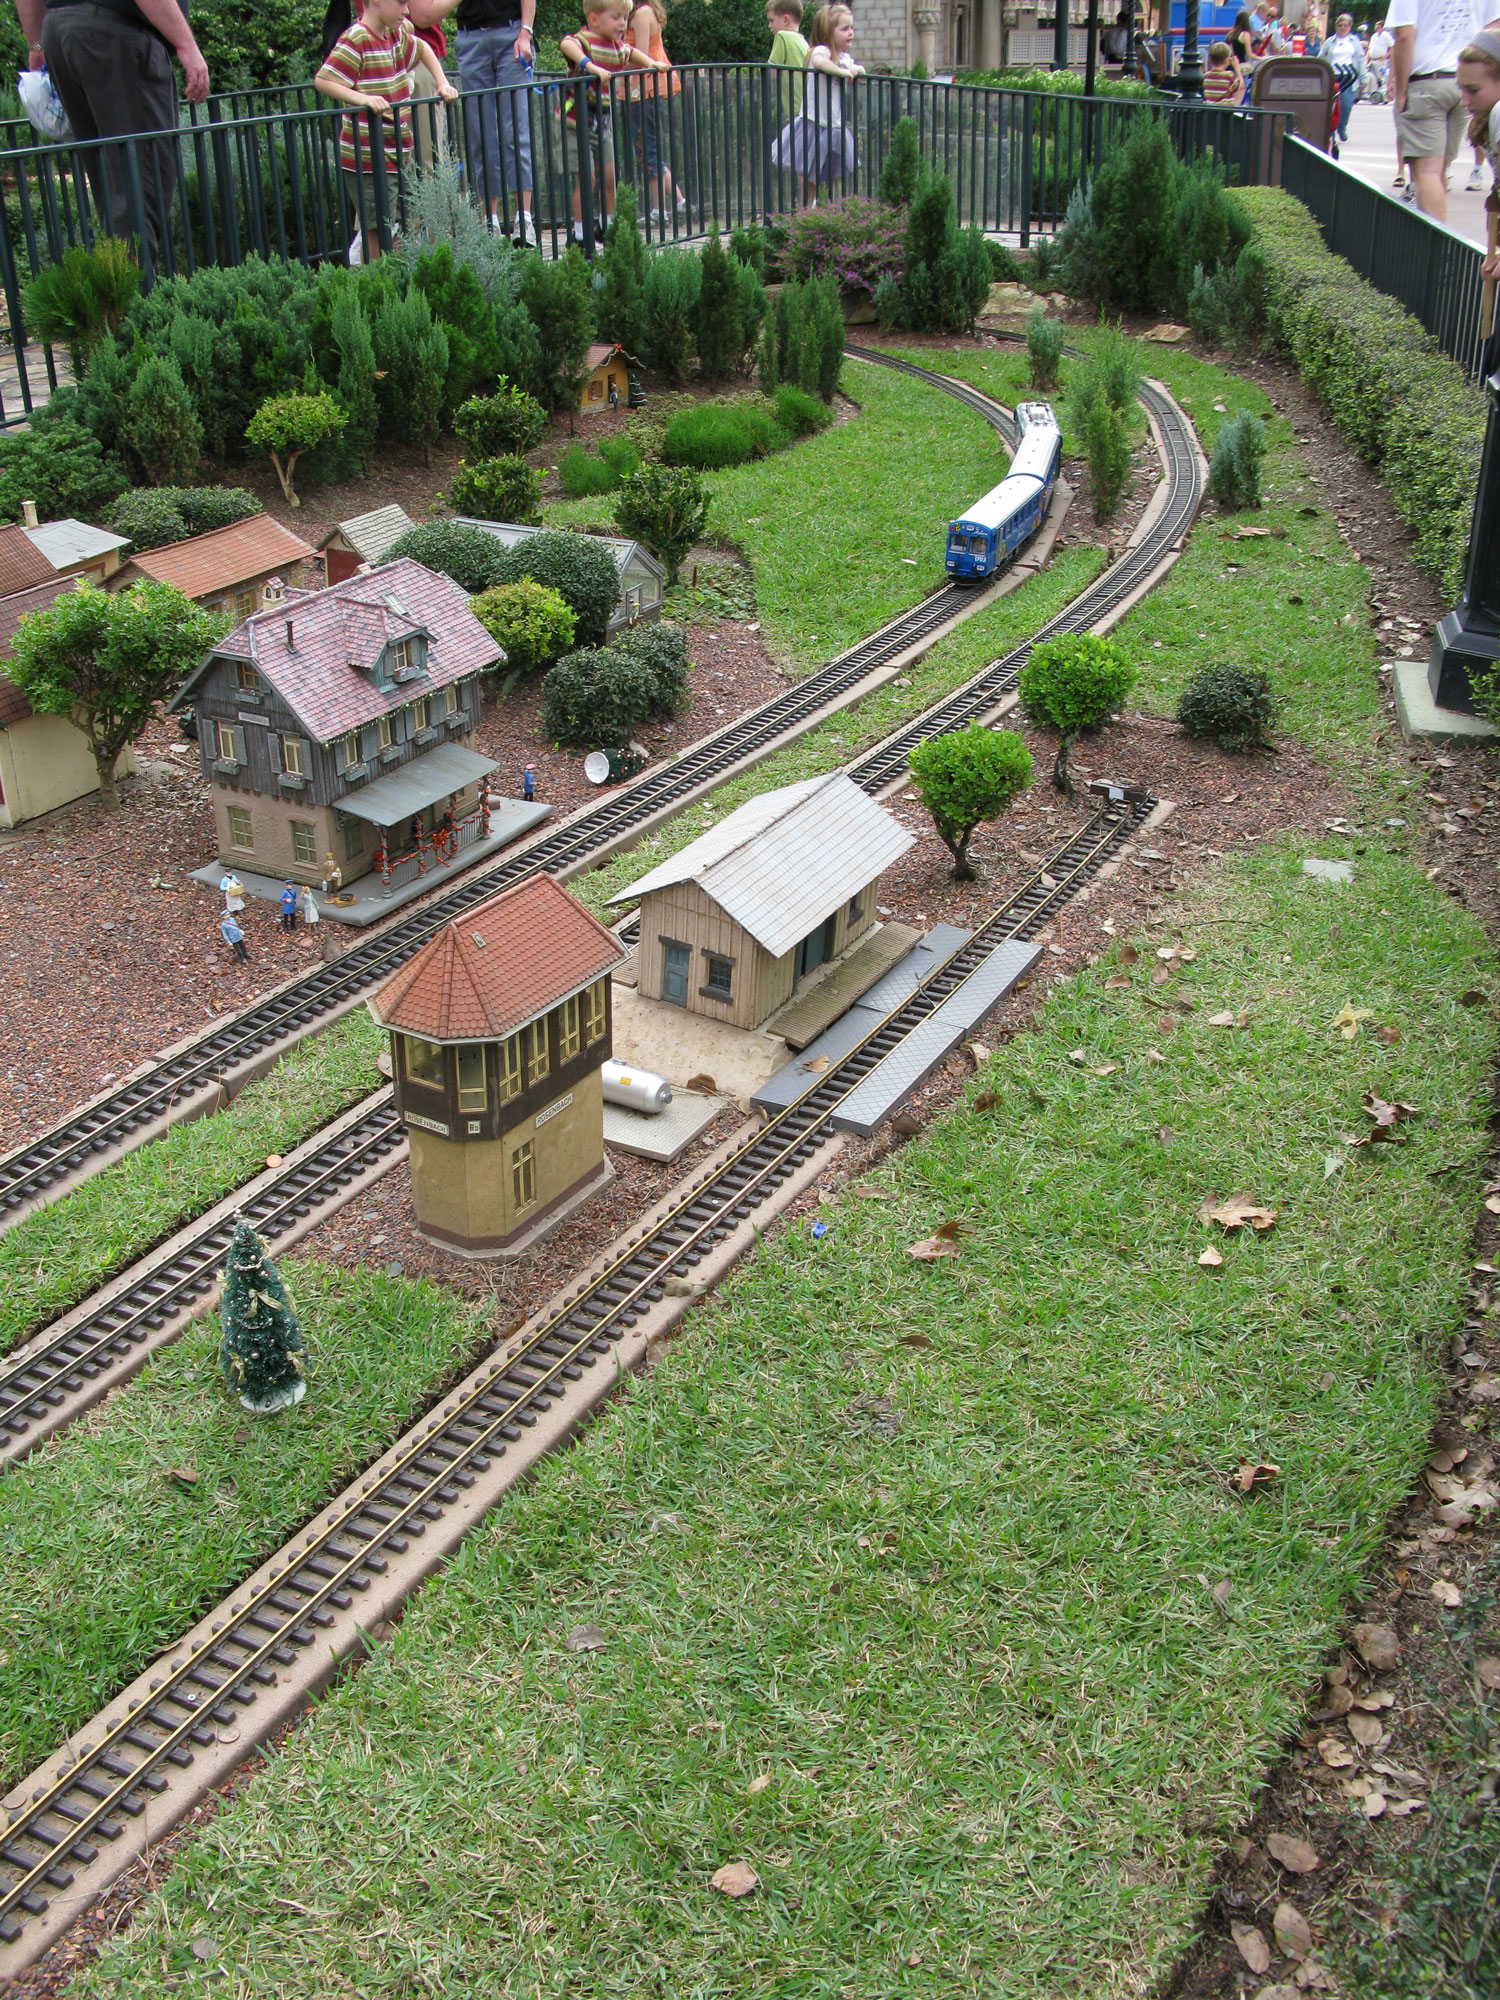 Kindereisenbahn (toy train)